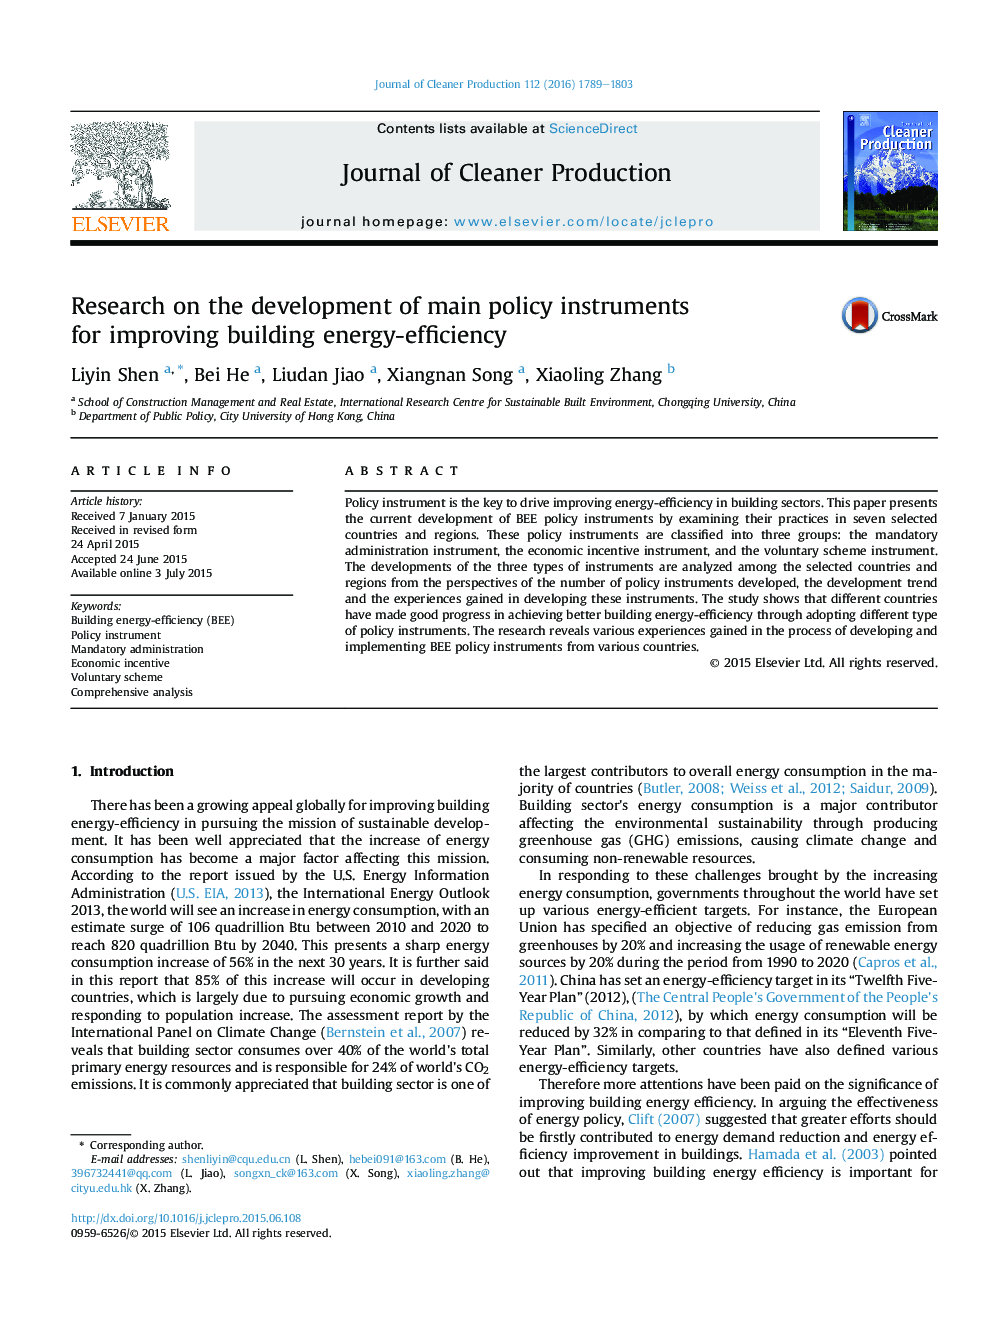 تحقیق در زمینه توسعه ابزارهای اصلی سیاست برای بهبود بهره وری انرژی ساختمان 